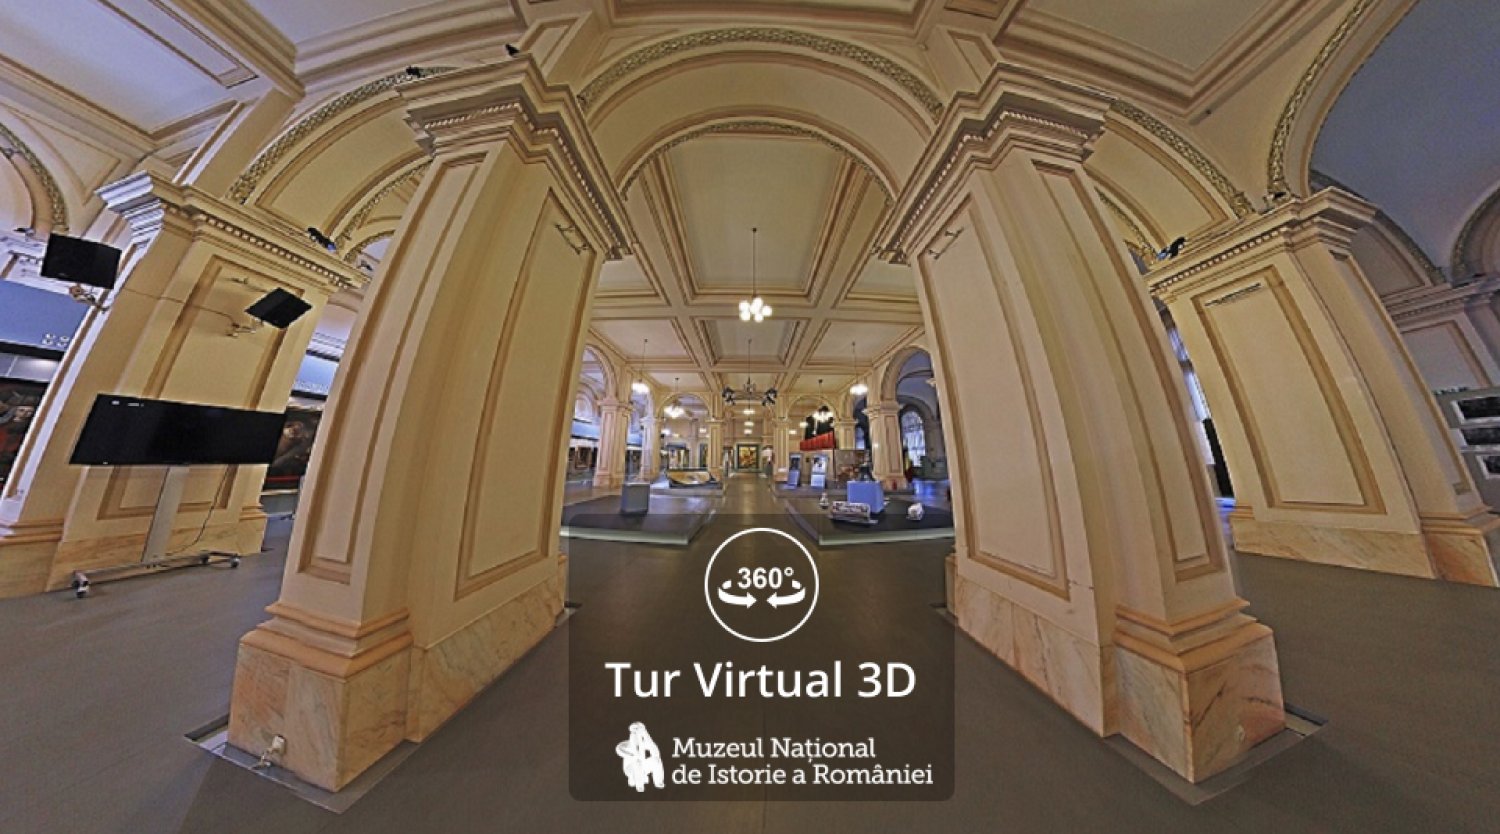 Tur virtual 3D - Muzeul National de Istorie a Romaniei